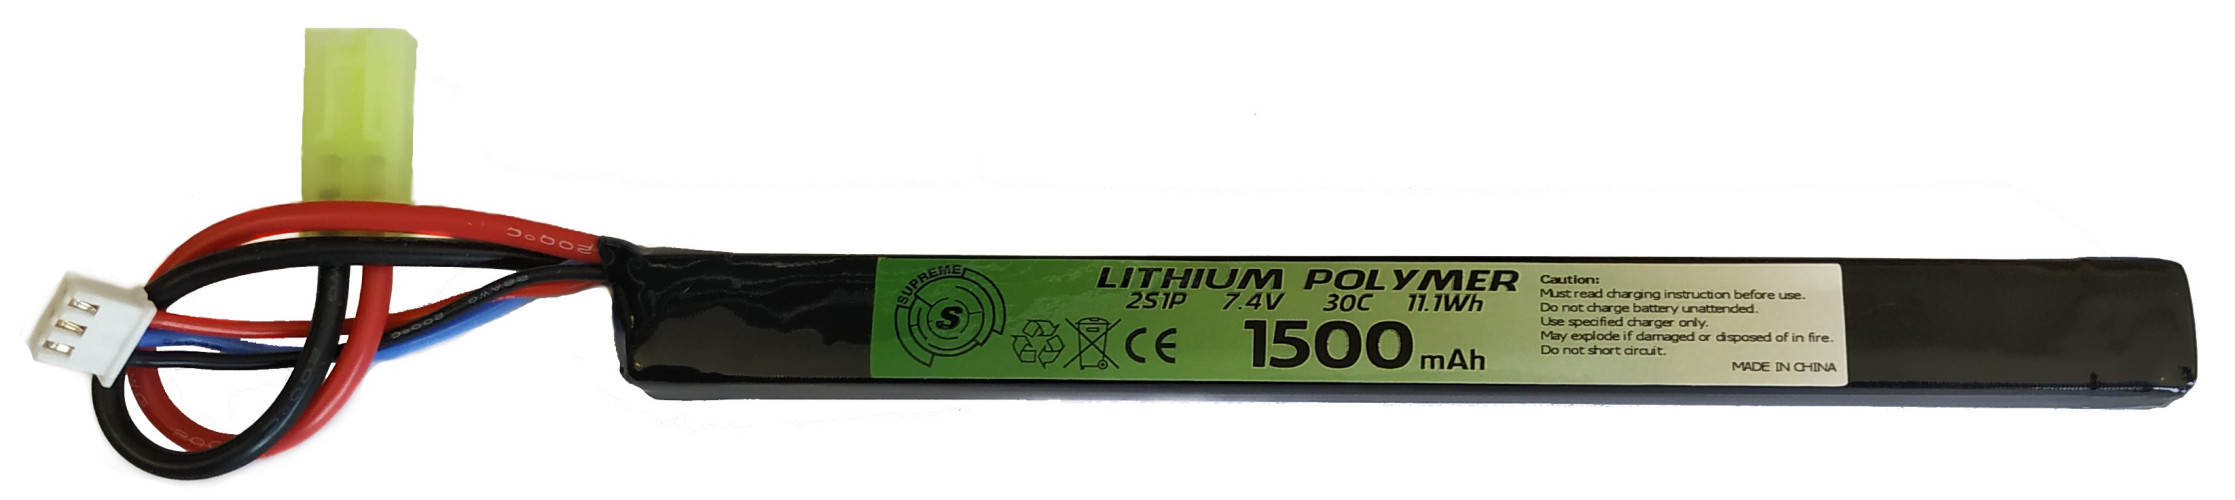 LiPo 7.4 x 1500 30 C - AKS/Kurz - Mini Tamiya (SUPREME)